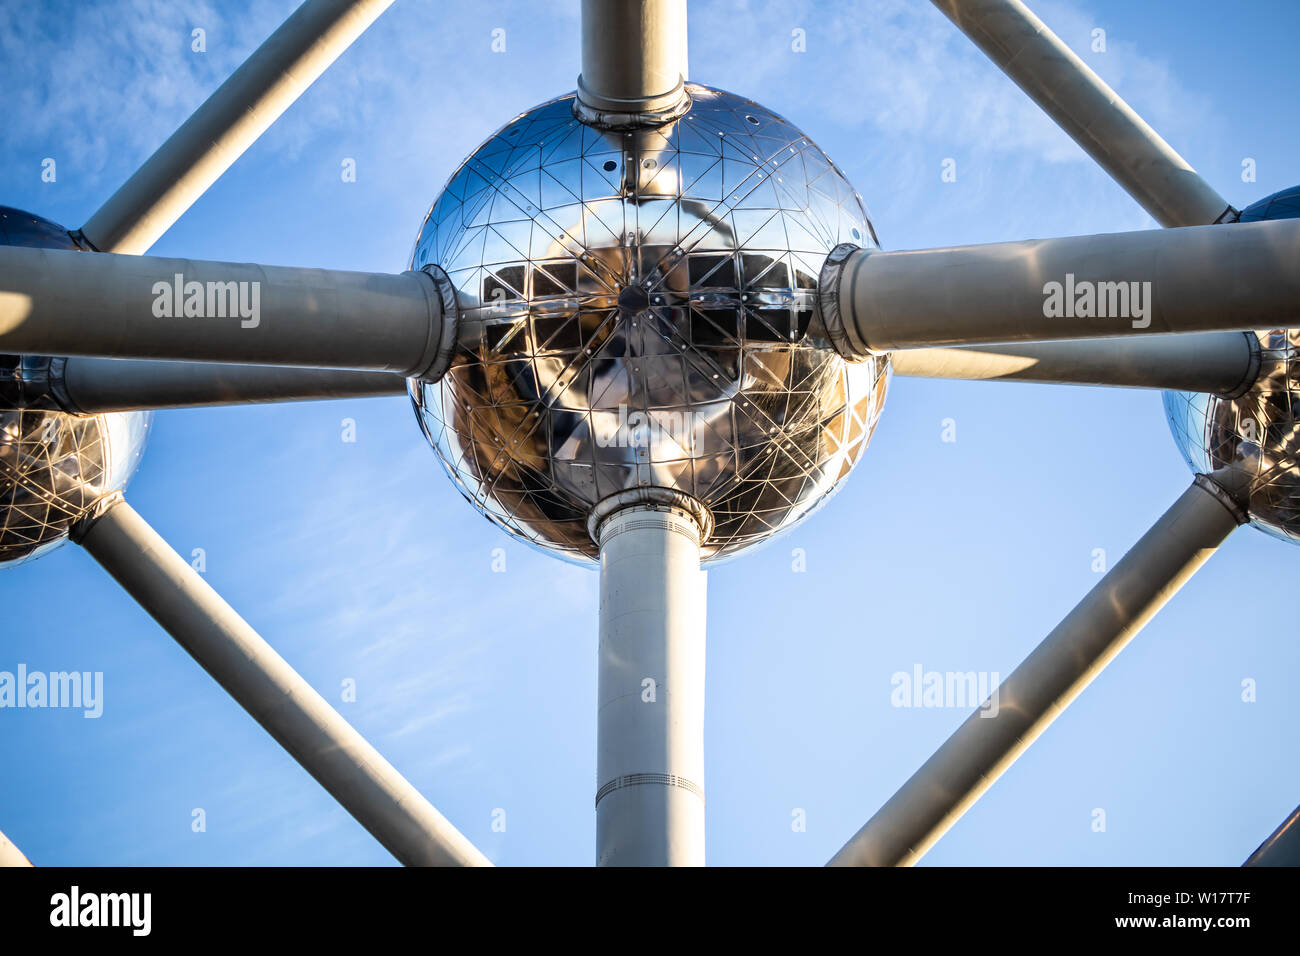 Bruxelles, Belgique, Jan 2019 Atomium, hiver ciel bleu nuages, Atomium représente neuf atomes de fer en forme de cubiques centrés cellule de cristal de fer Banque D'Images